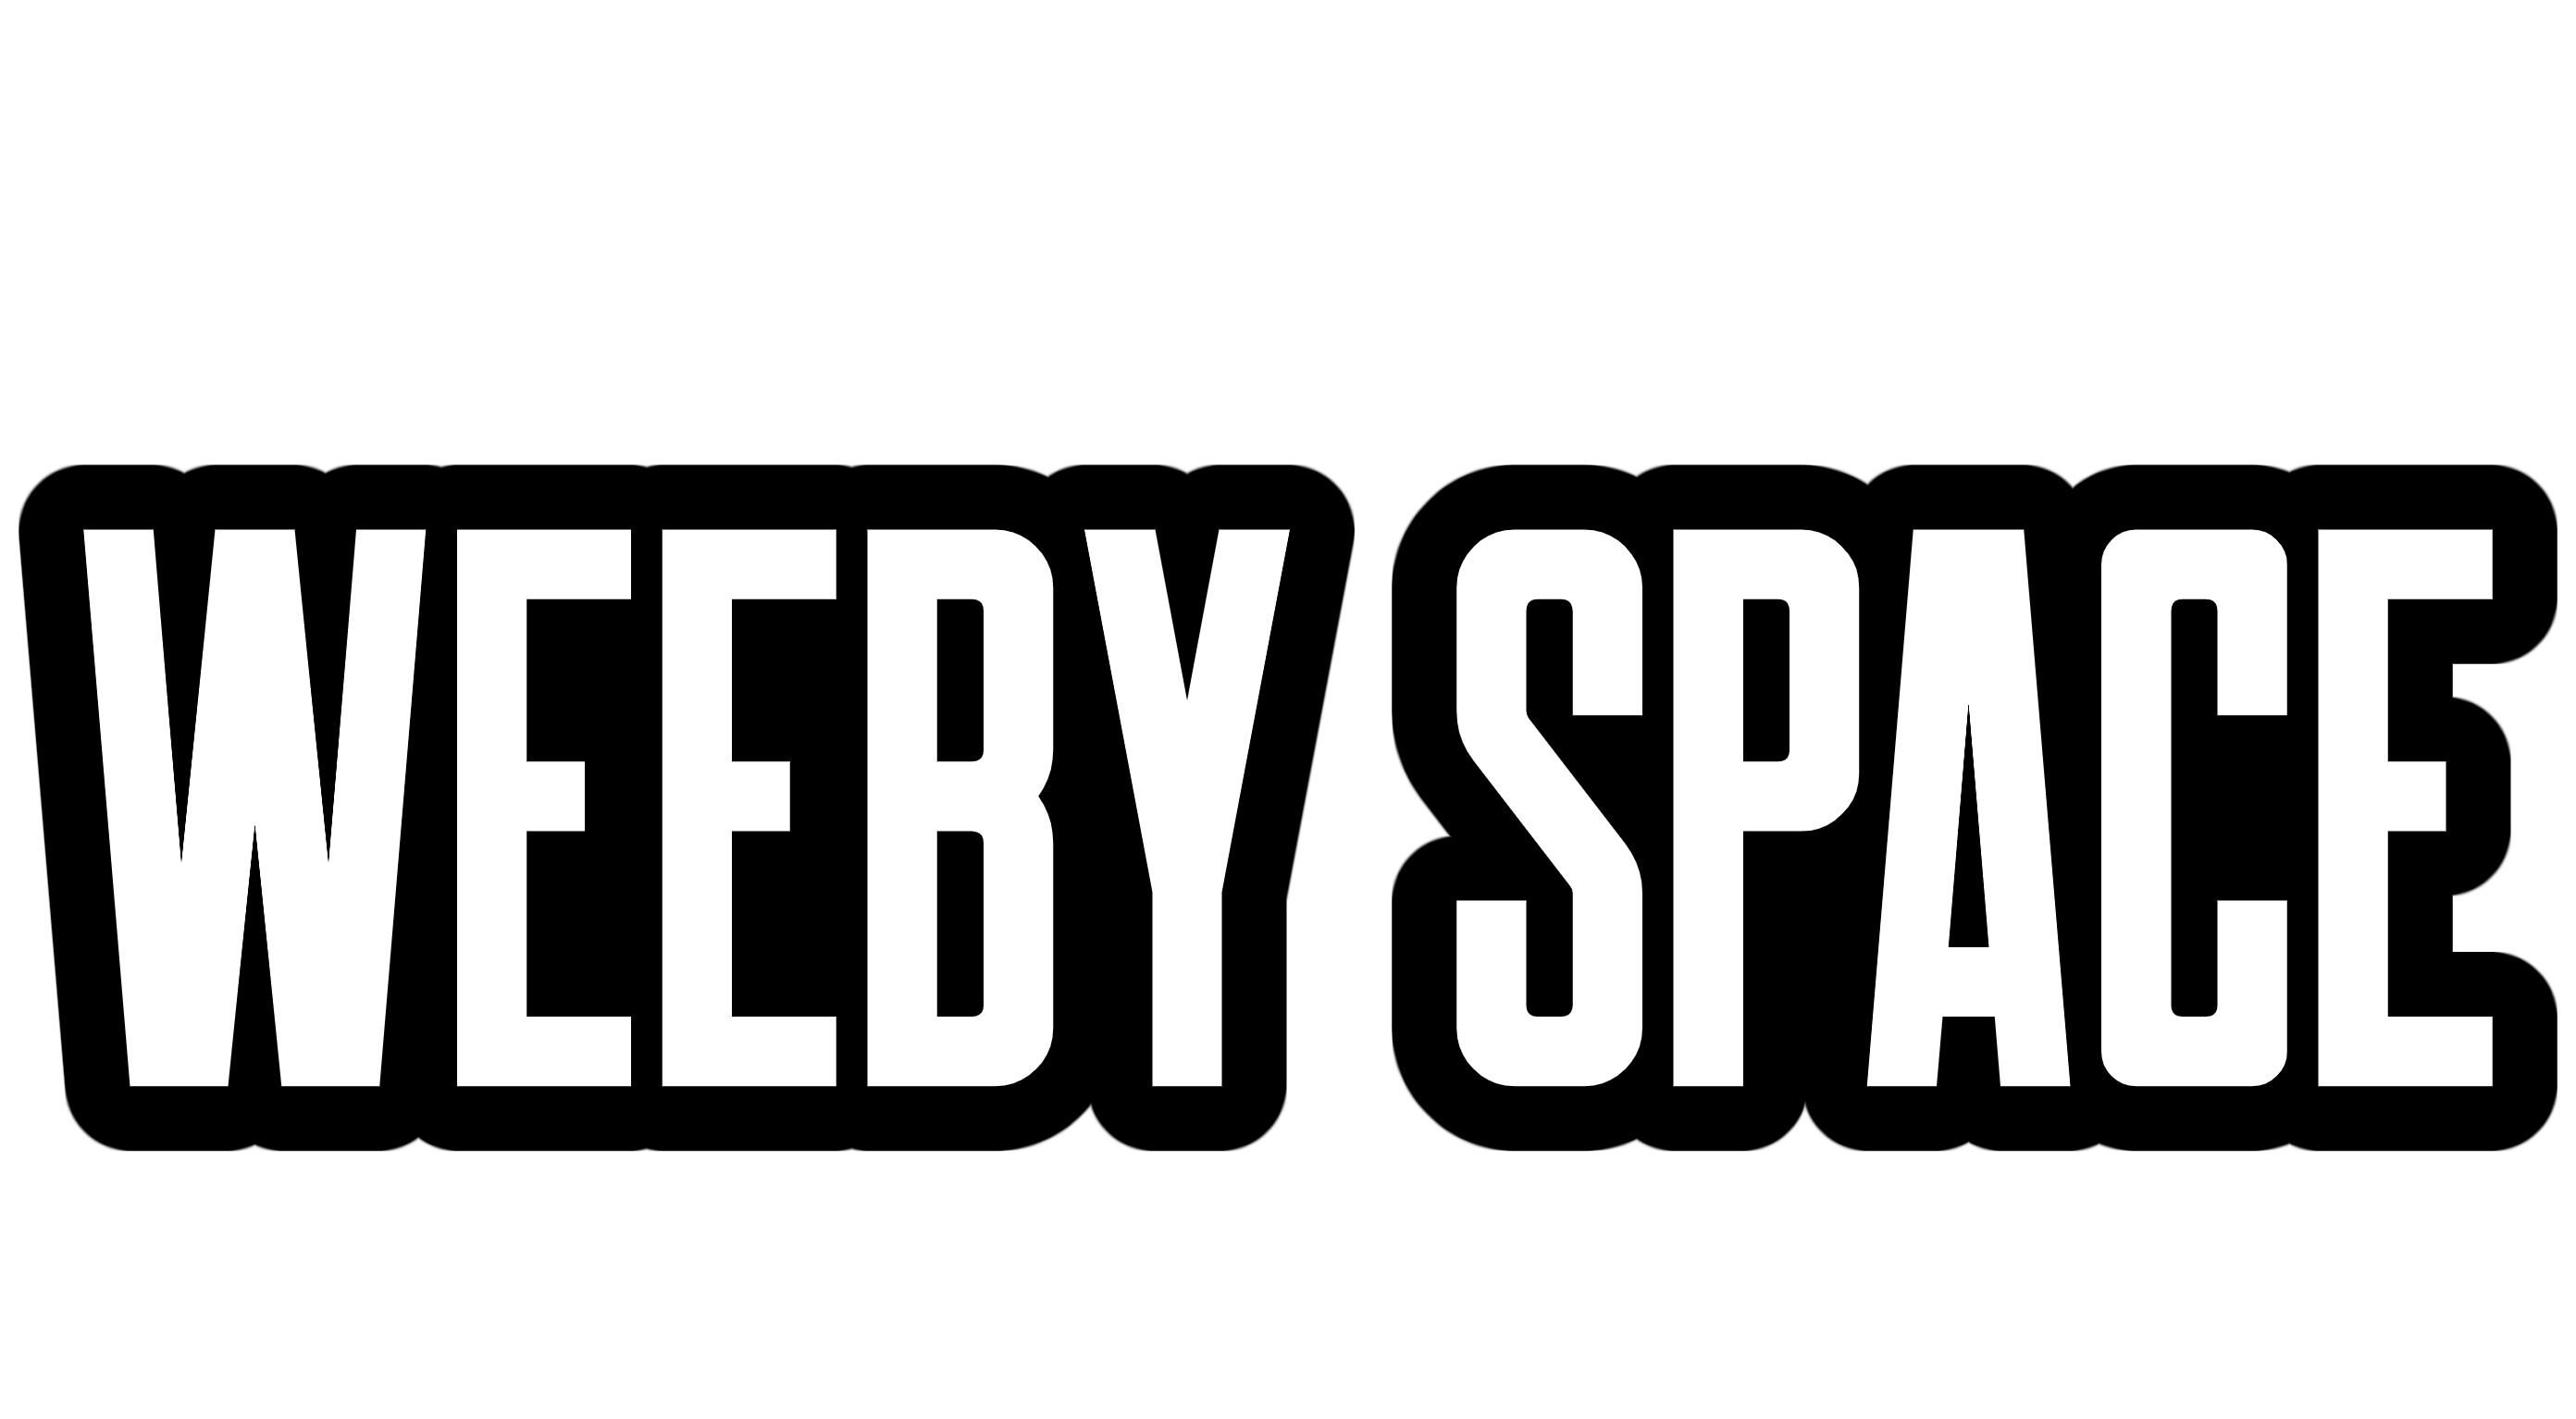 WeebySpace